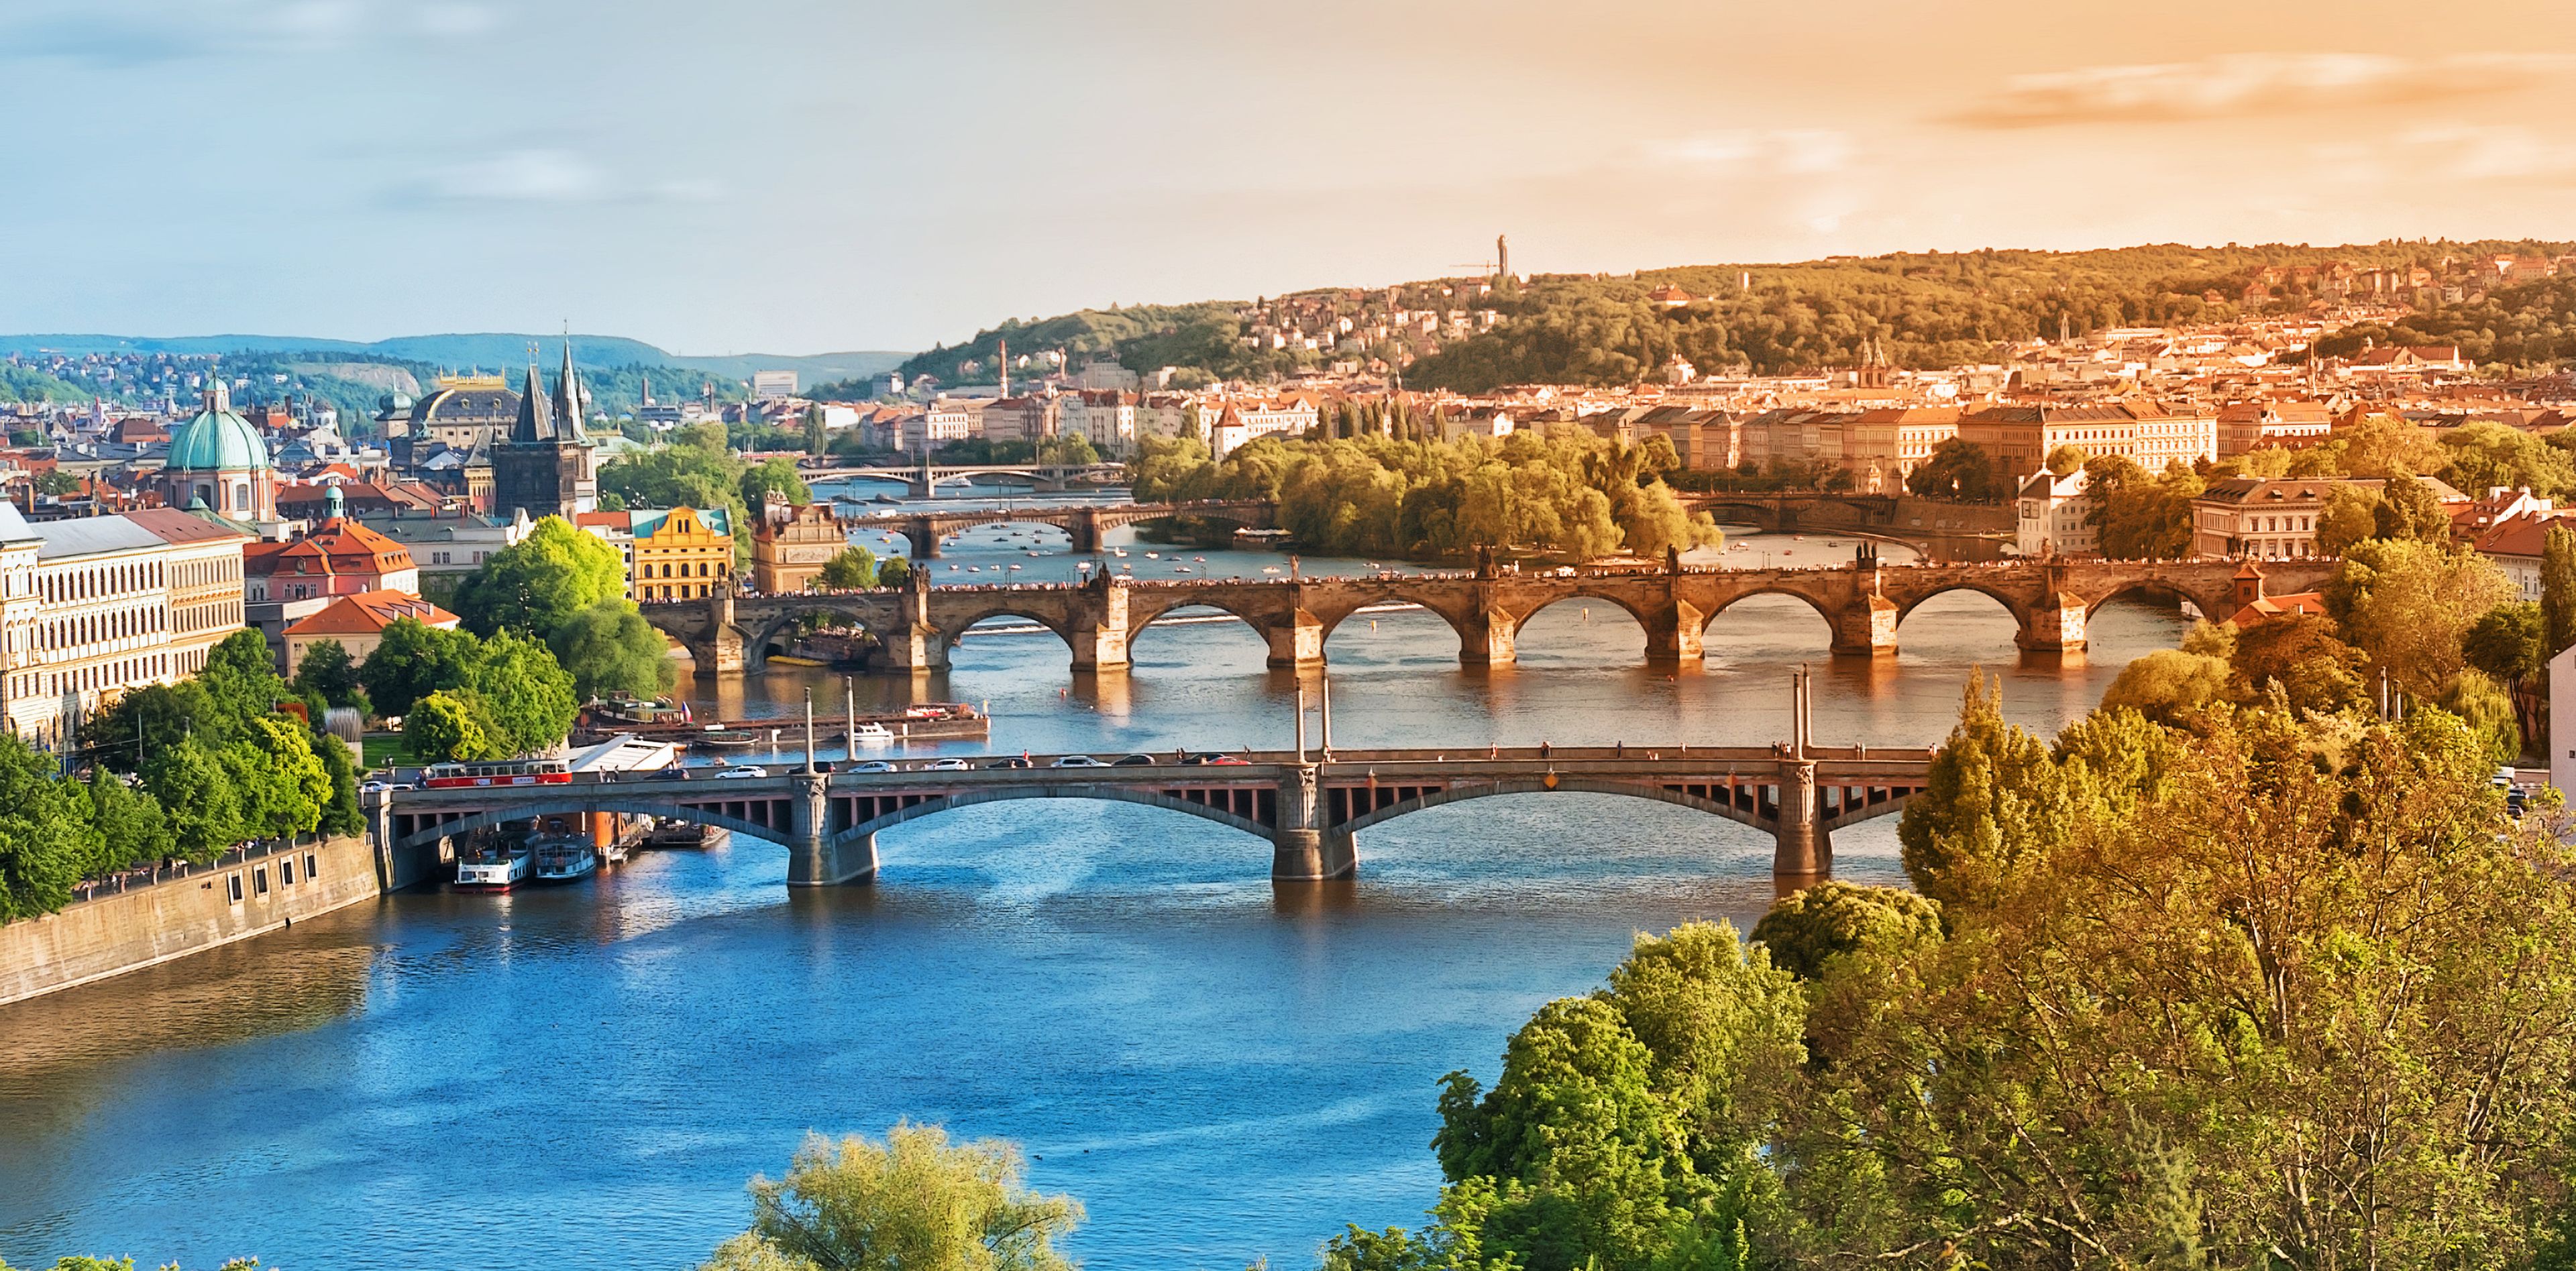 Brücken in Prag